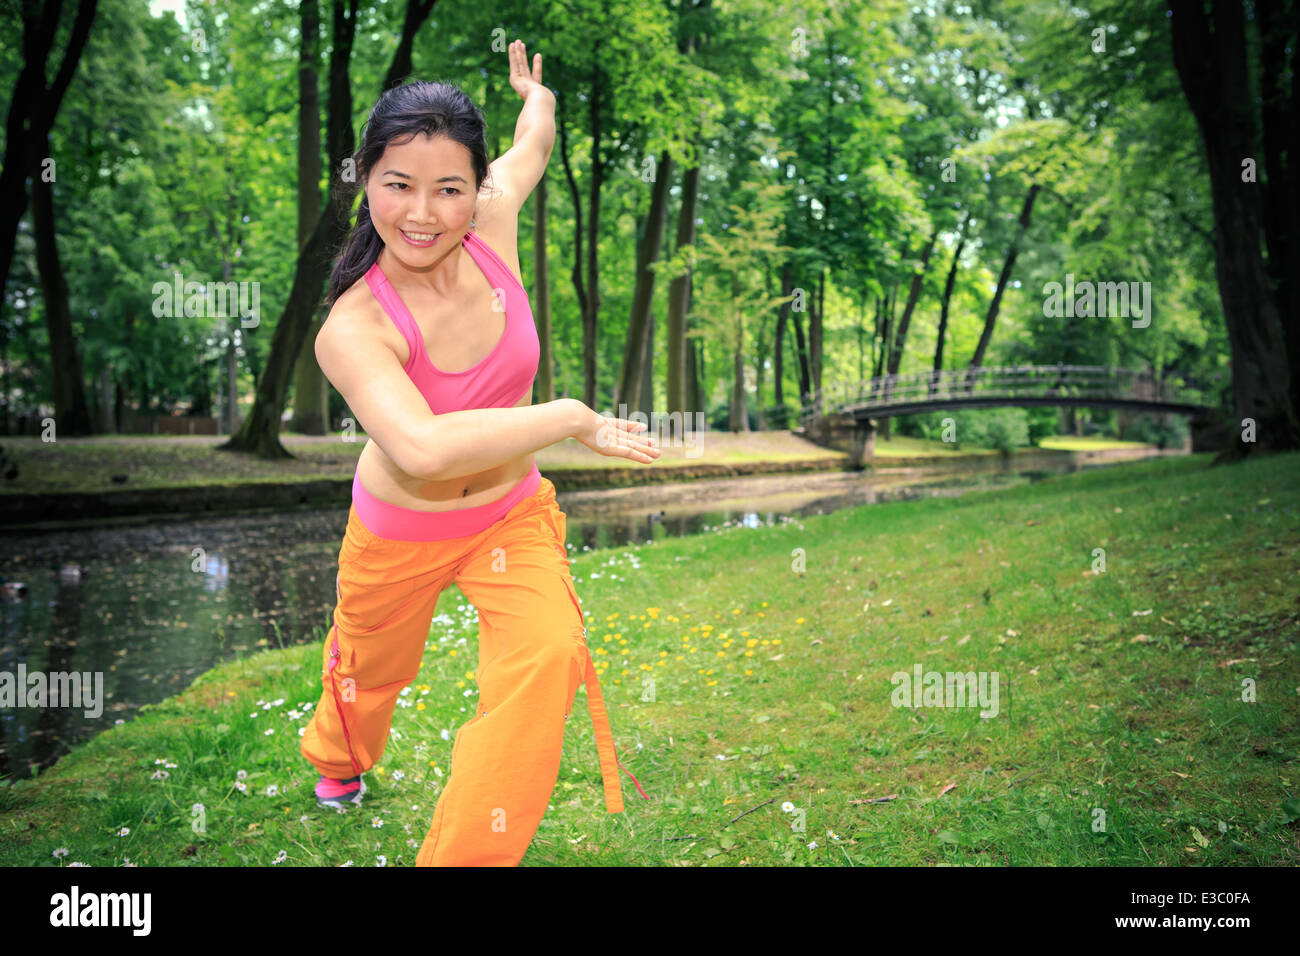 Frau tanzt Zumba oder Aerobic in einem alten park Stockfoto